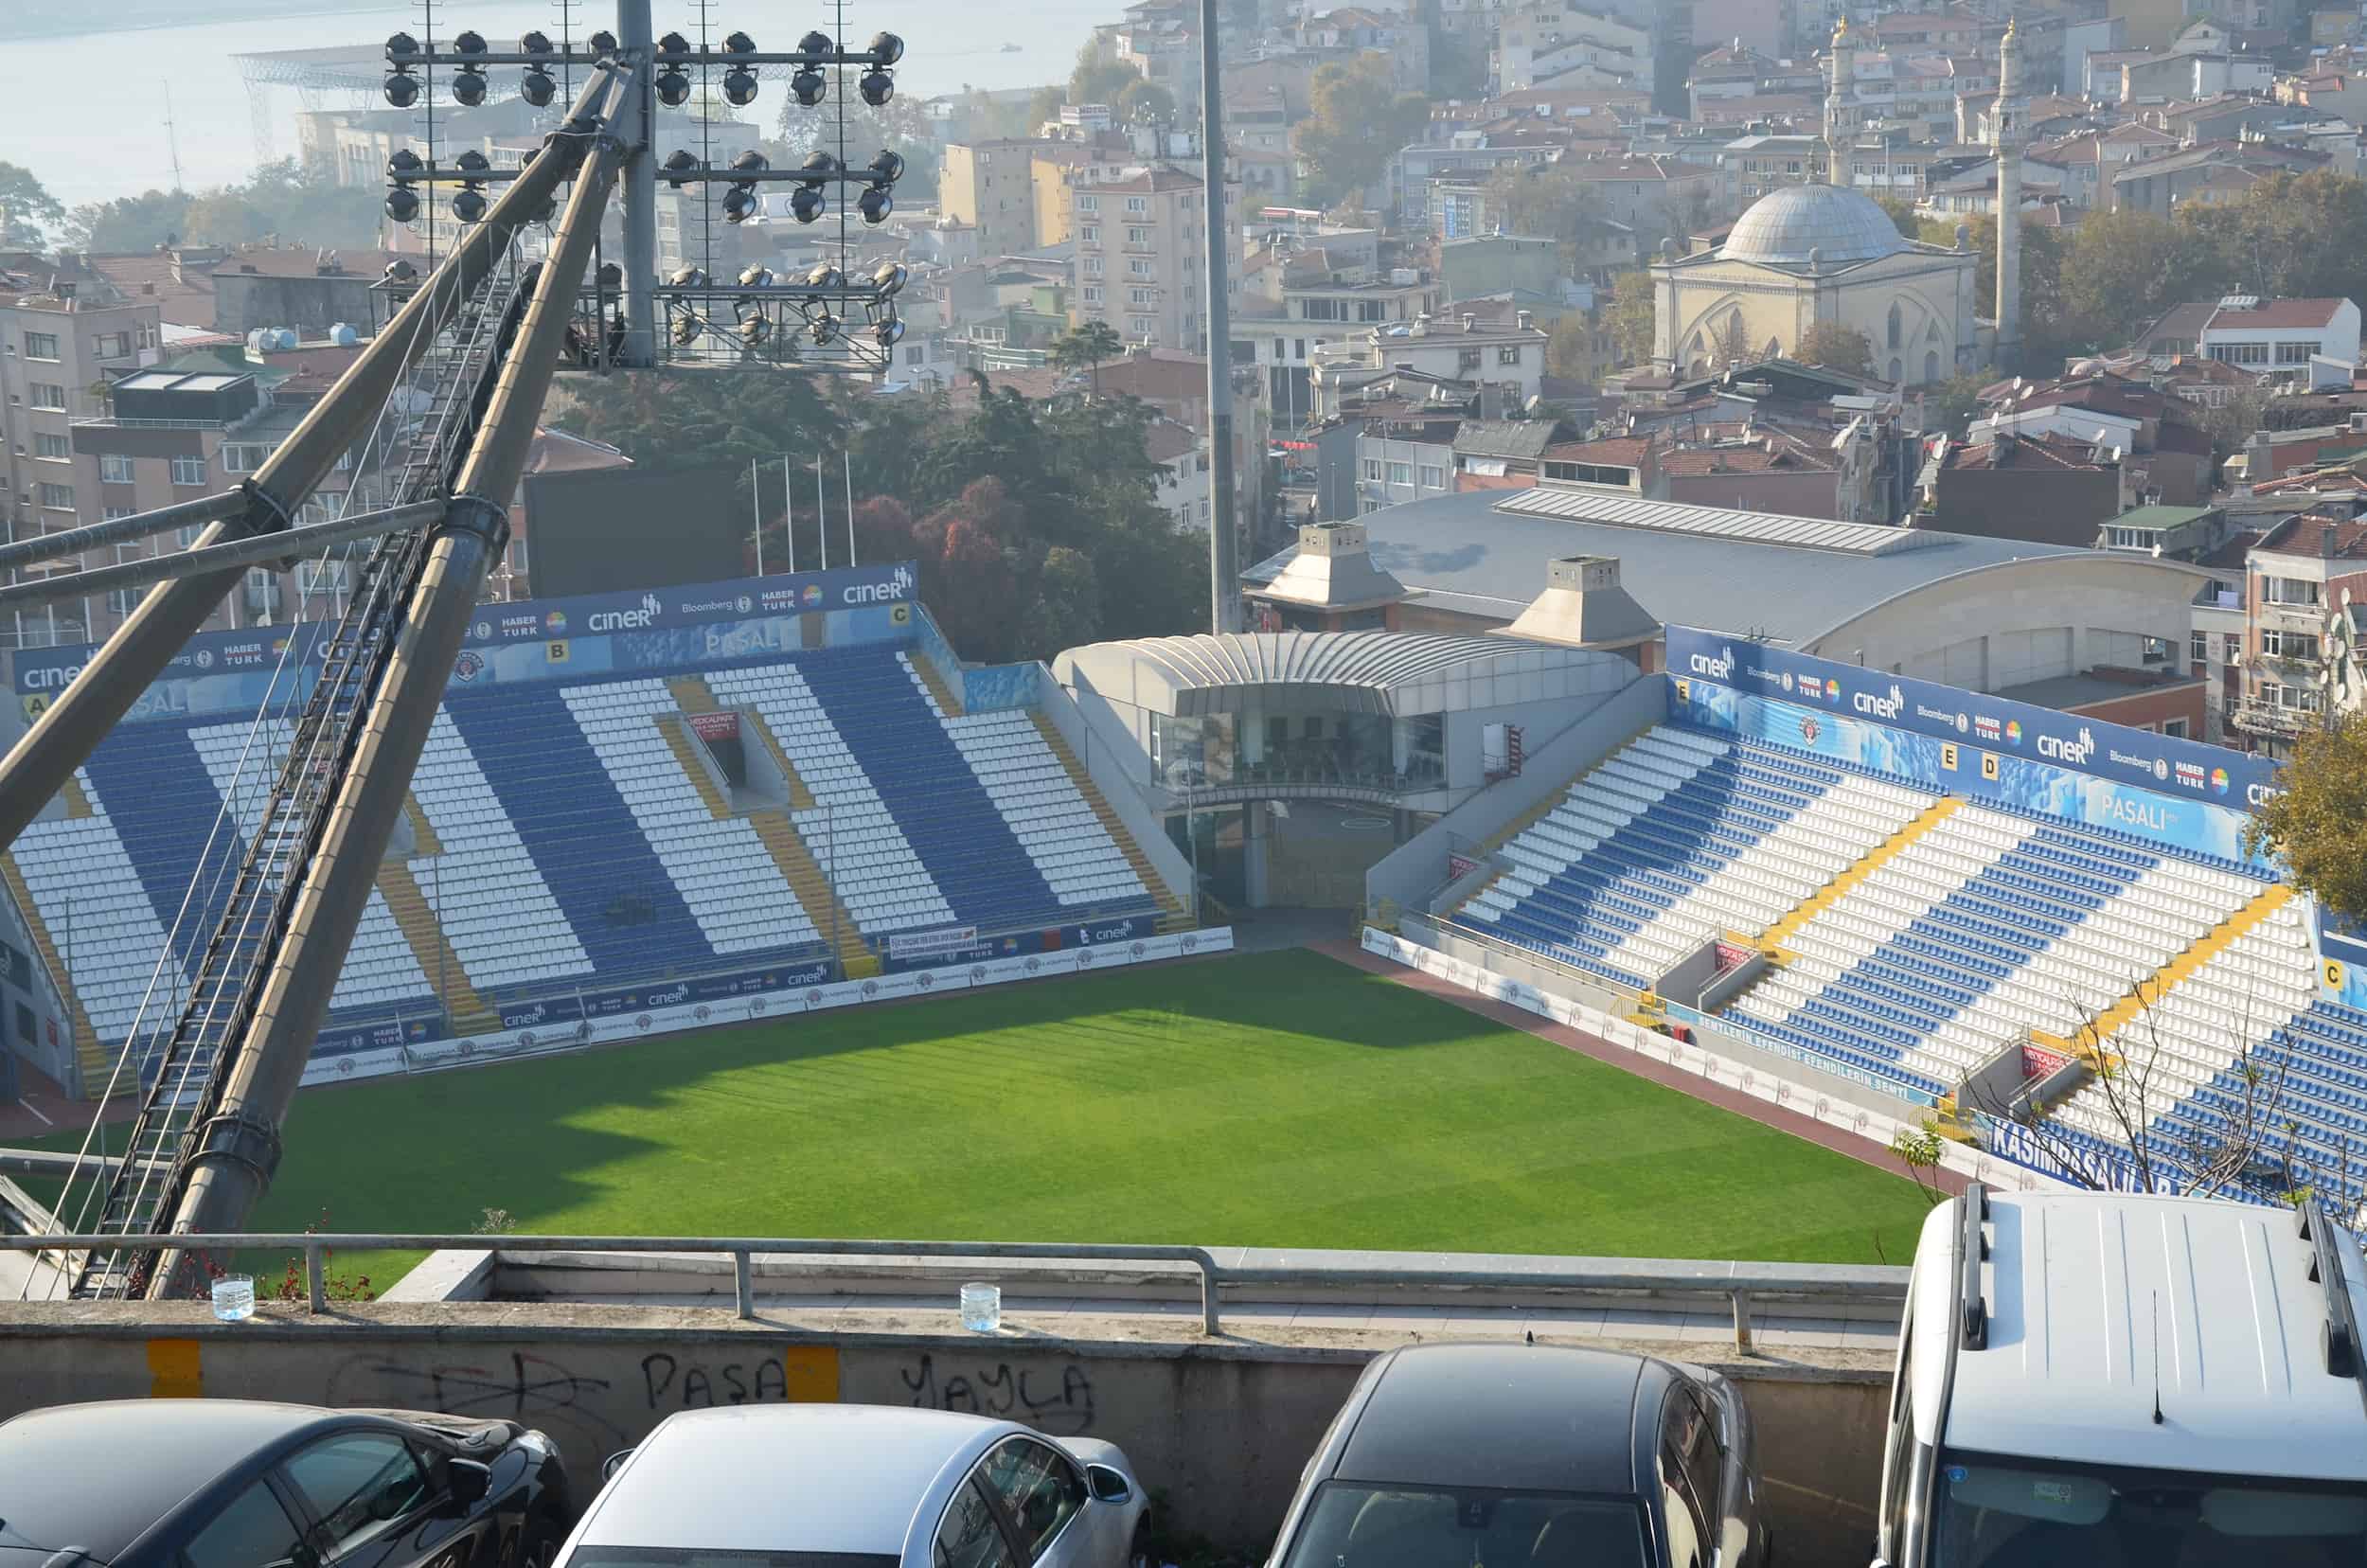 Recep Tayyip Erdoğan Stadium in Kasımpaşa, Istanbul, Turkey